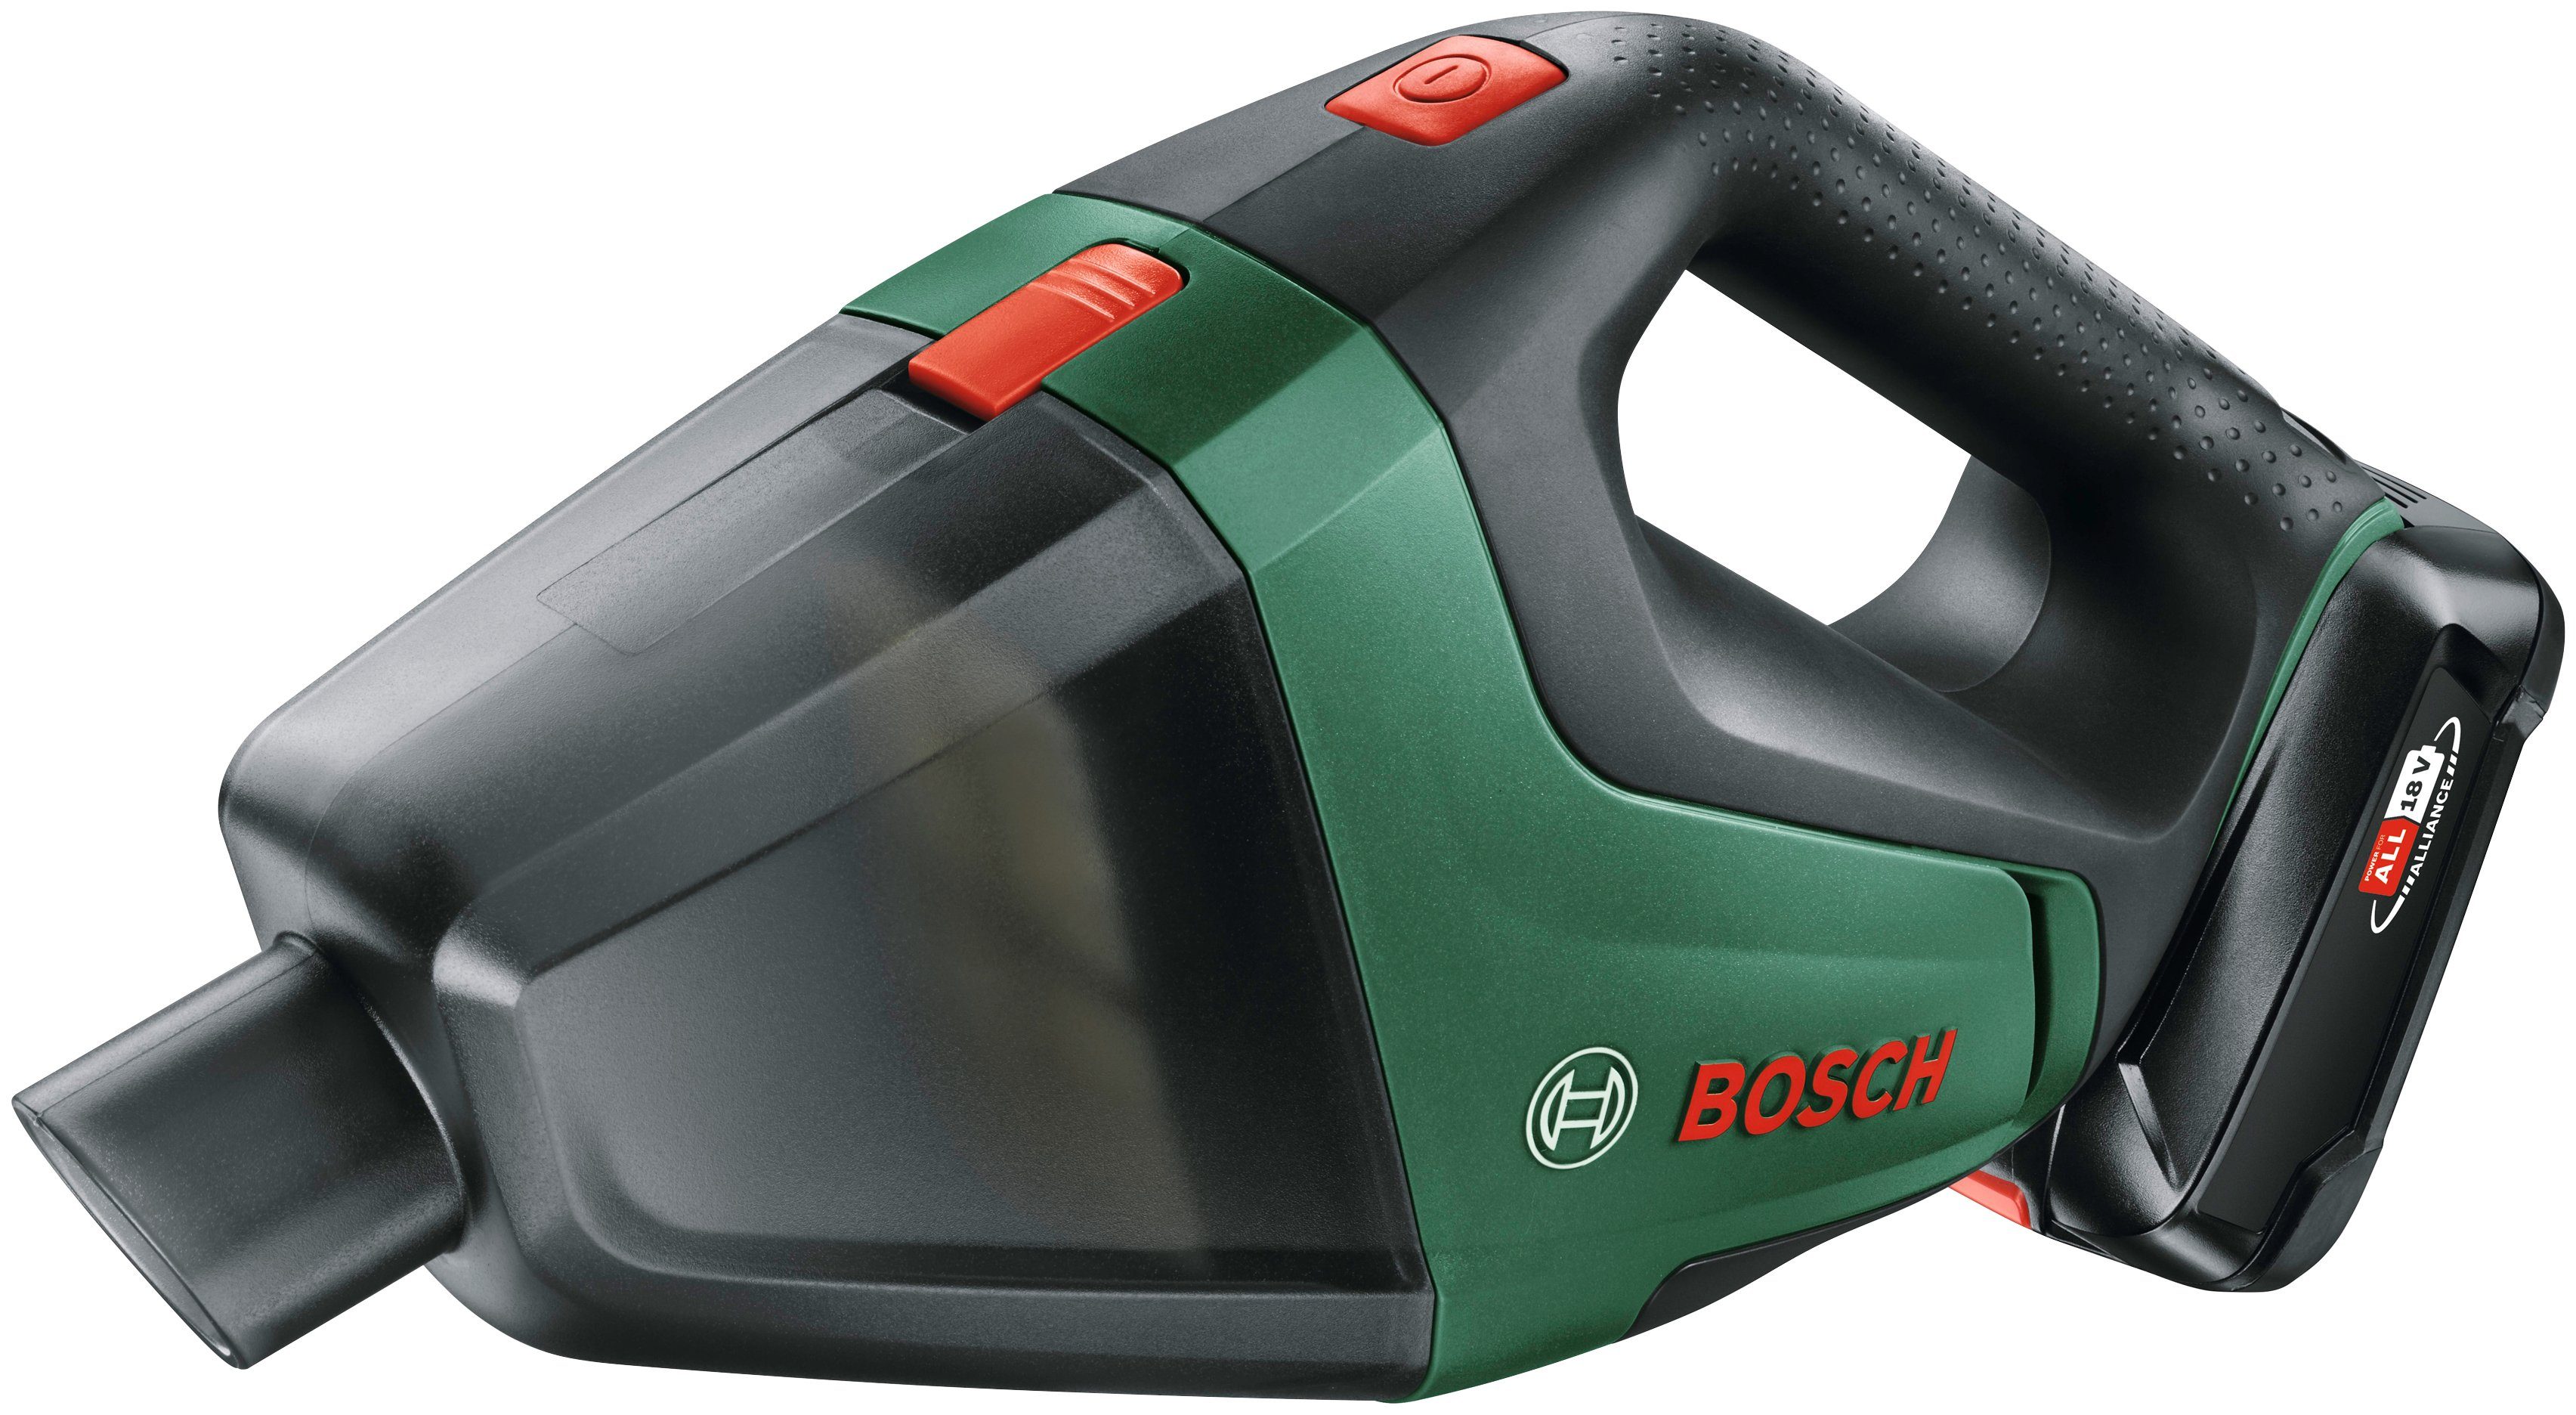 Bosch Home & Garden Akku-Handstaubsauger Akku UniversalVac inkl. und Ladegerät, 18, Maße: beutellos, mm 335x100x175